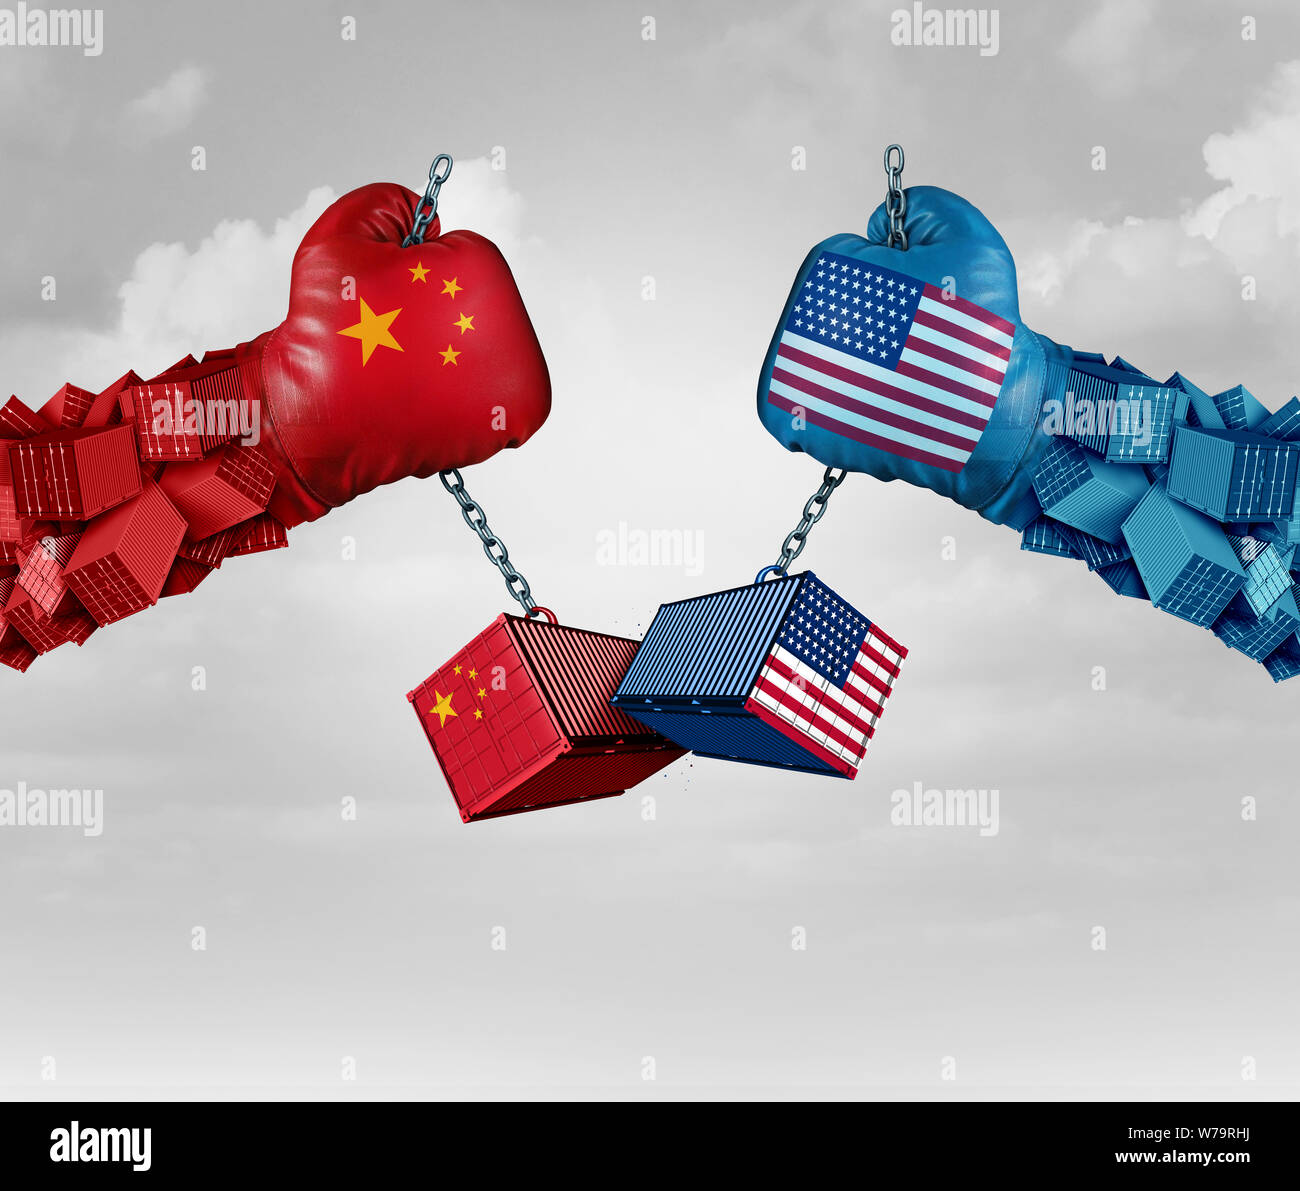 La Chine Nous ou United States Trade and American USA les droits de douane sur les produits chinois comme un conflit avec deux partenaires commerciaux qu'économique de l'importation. Banque D'Images